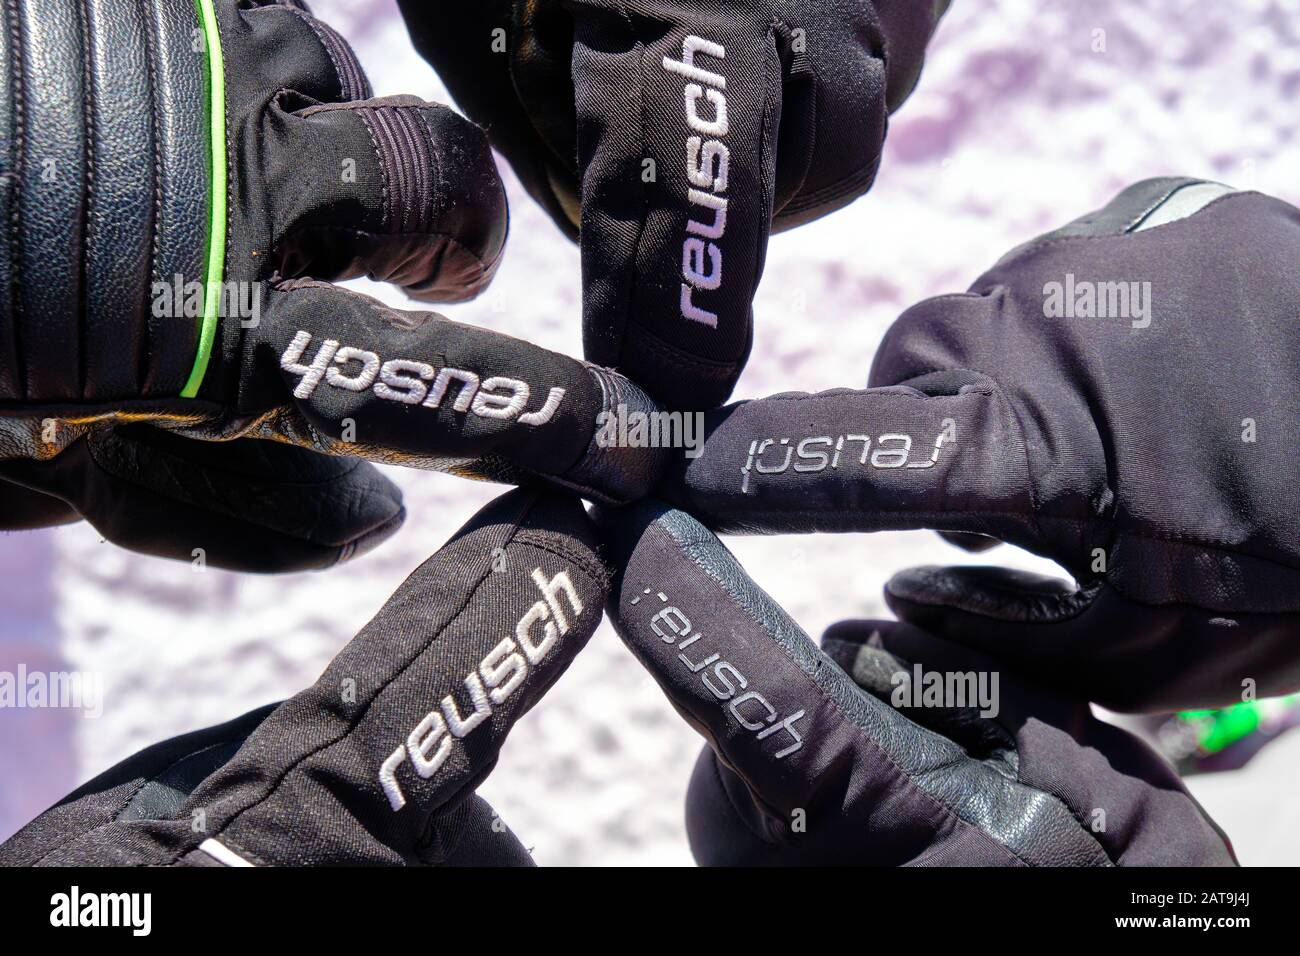 Ciampac, Italia - 24 de enero de 2020: Guantes negros Reusch apuntando cinco dedos índice en una formación estelar, en una pista de esquí en Dolimites, Italia, durante Win Foto de stock